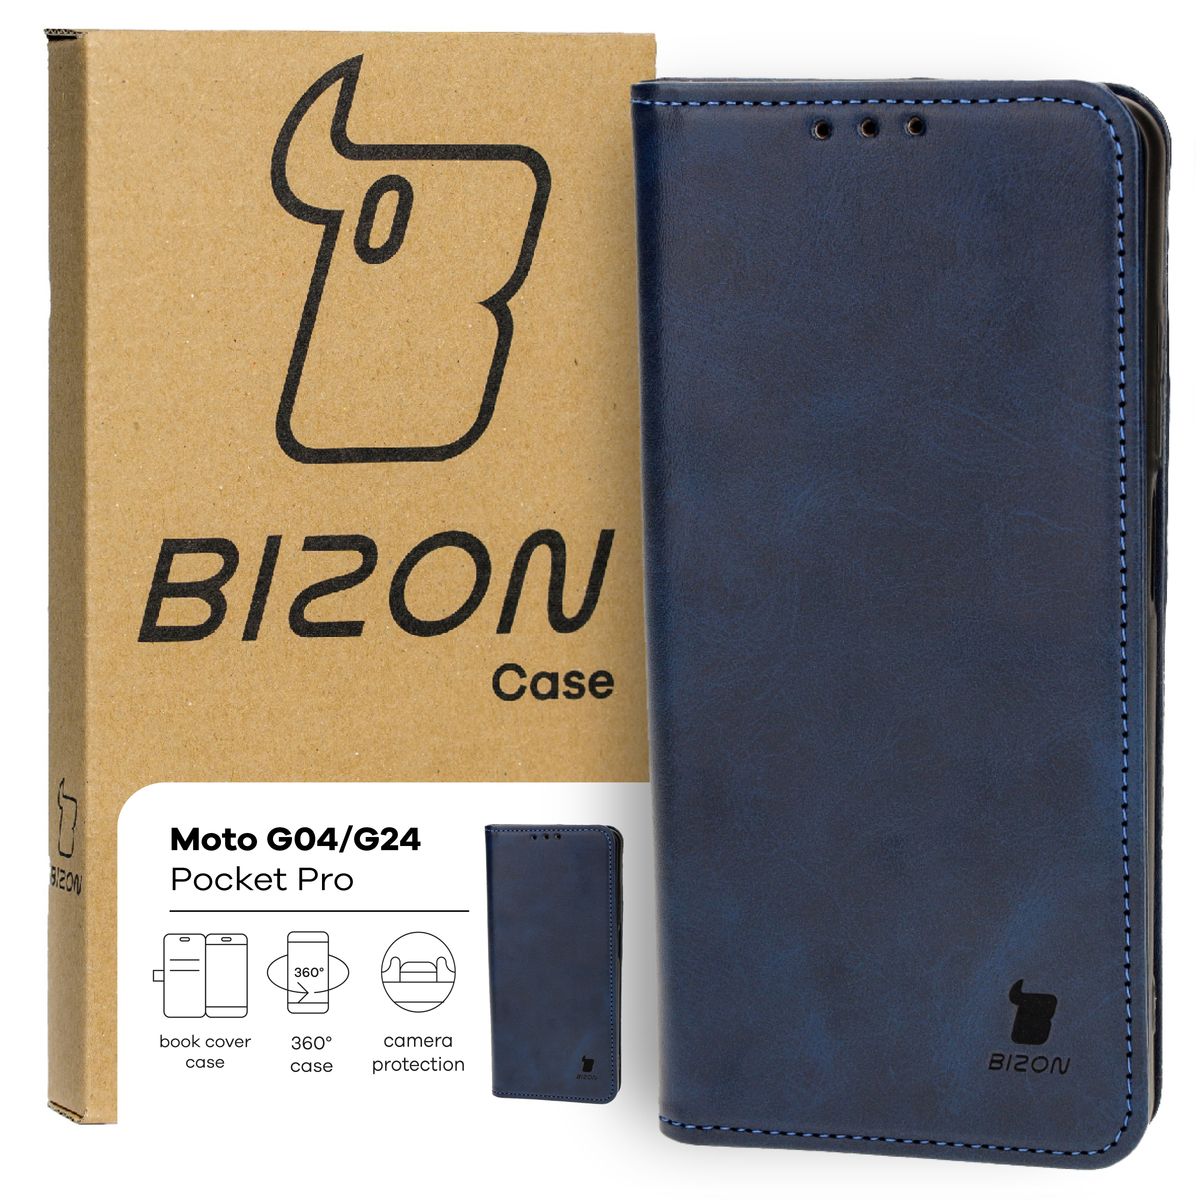 Schutzhülle für Motorola Moto G04 / G24, Bizon Case Pocket Pro, Dunkelblau